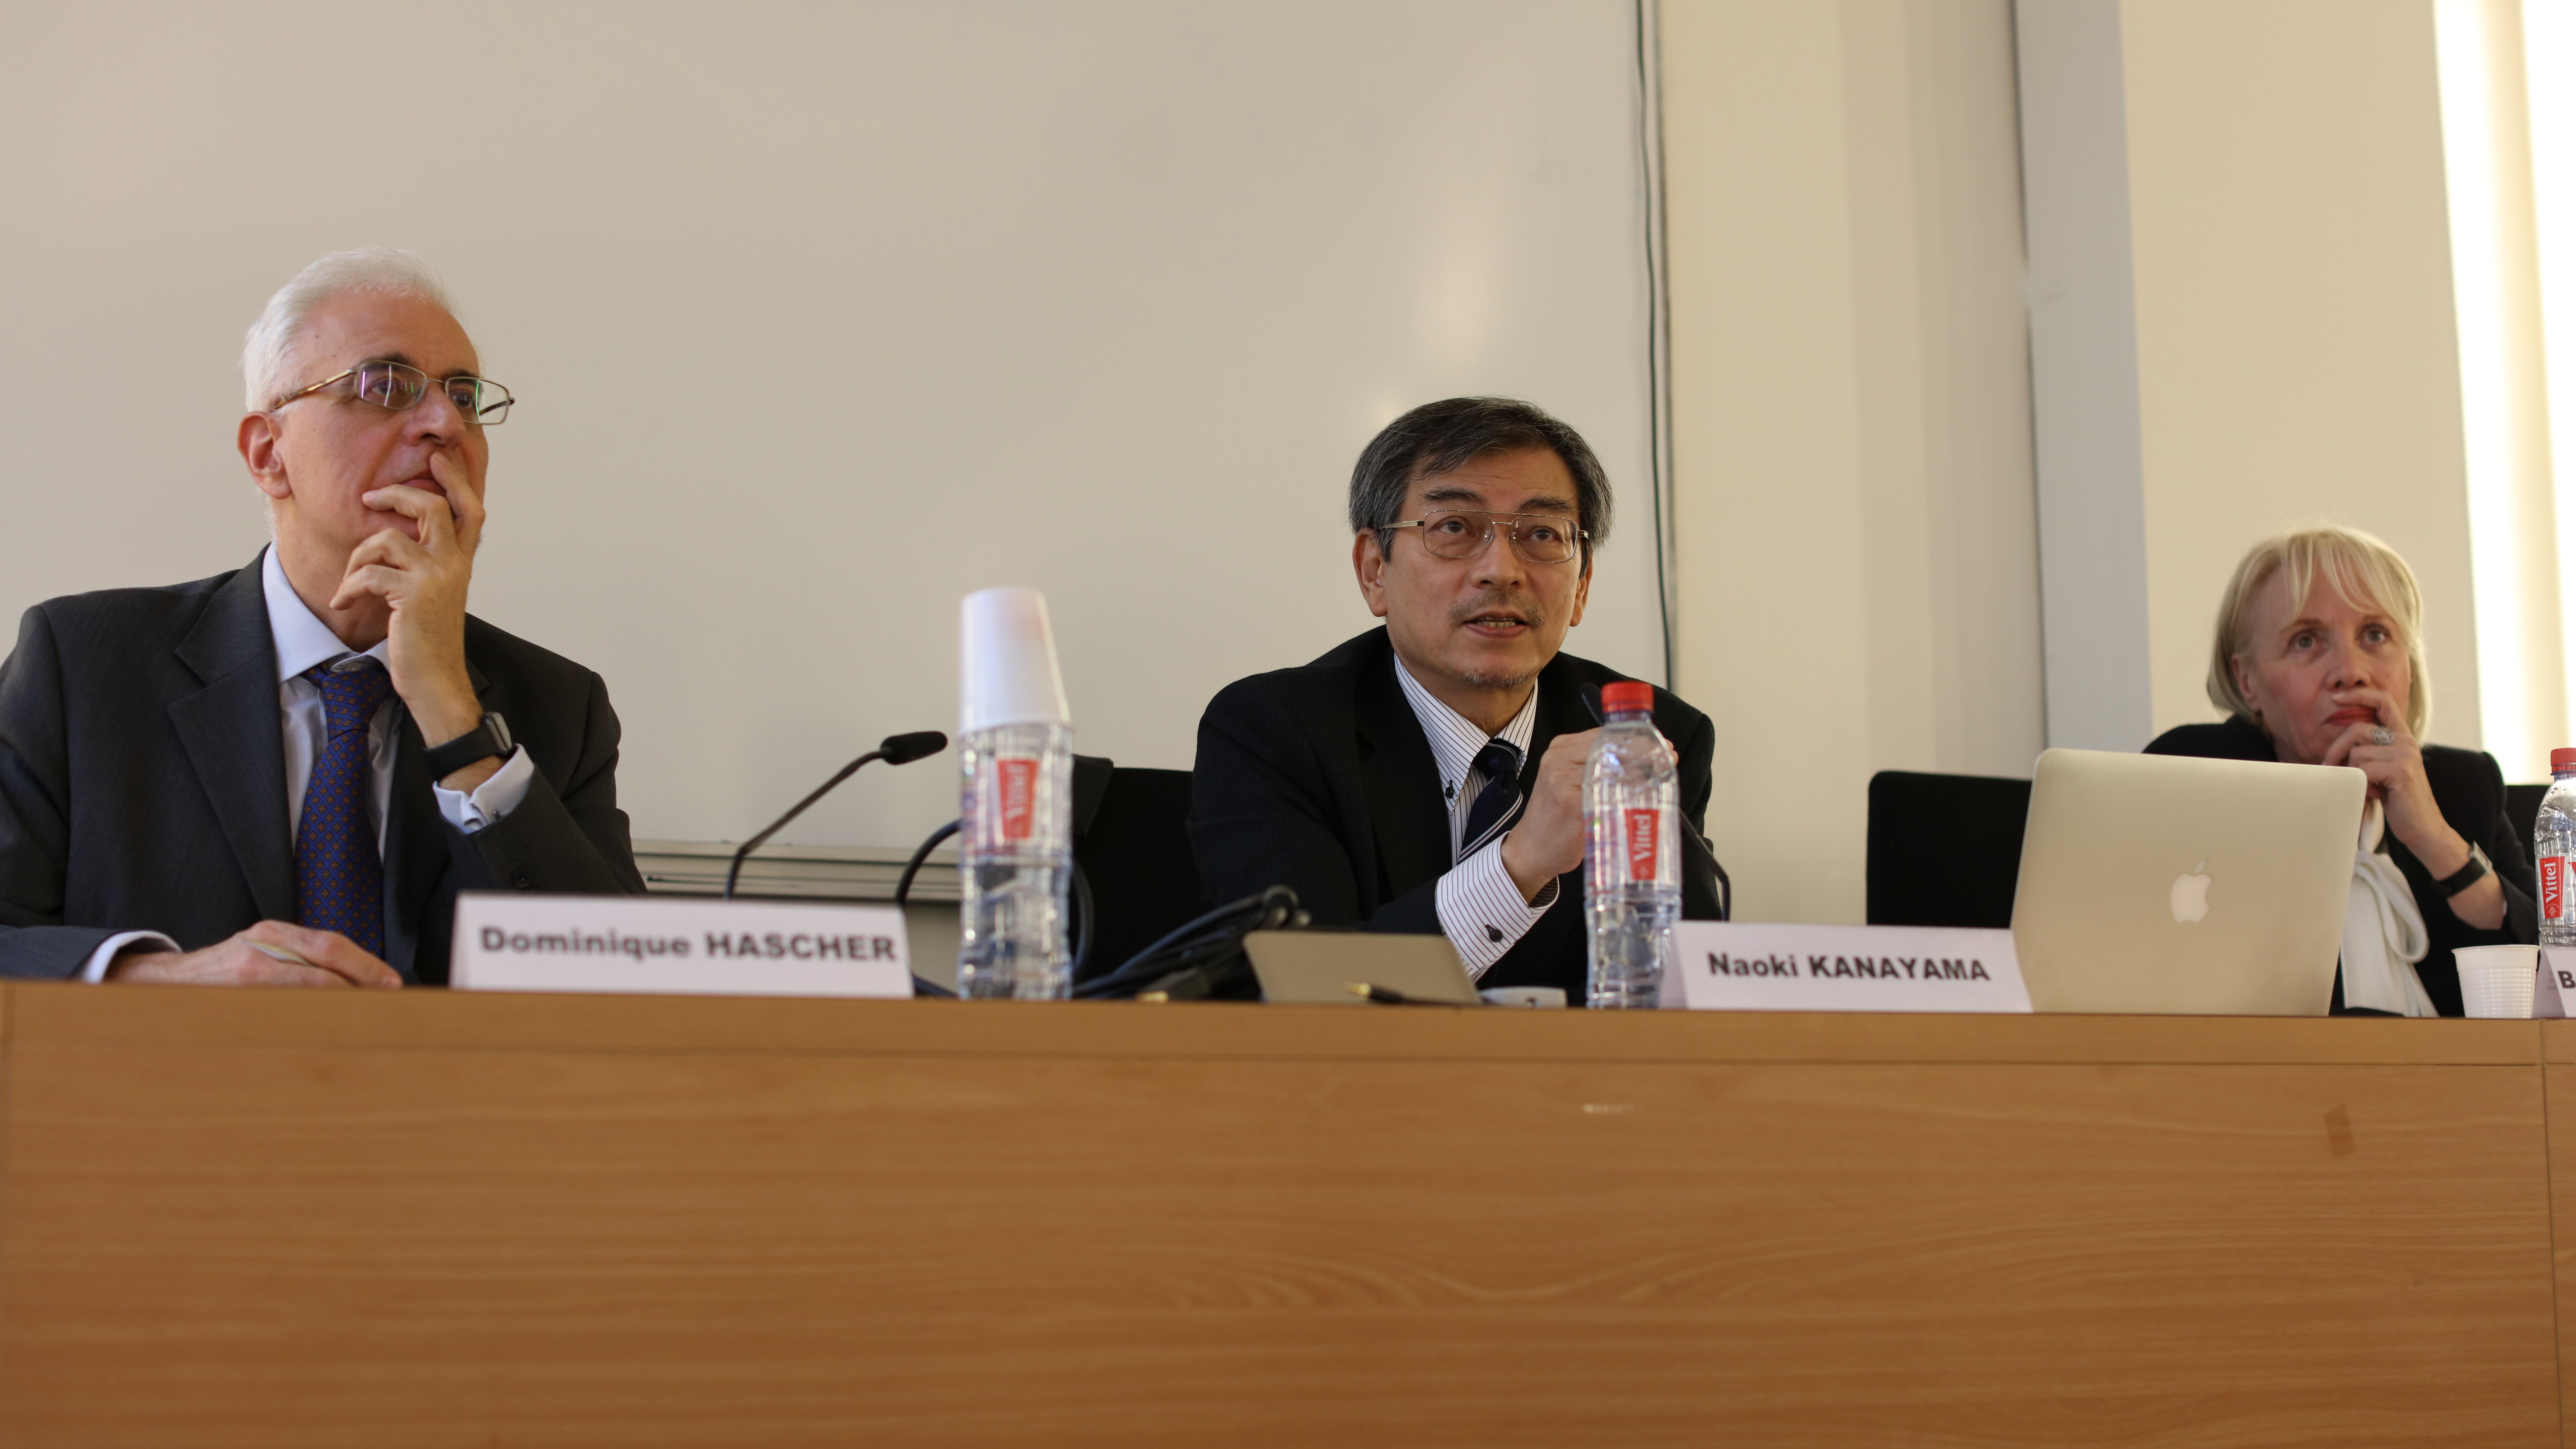 <b>Conférence : L'état des lieux de l'arbitrage au Japon</b><br />©JSS
<br /><br />